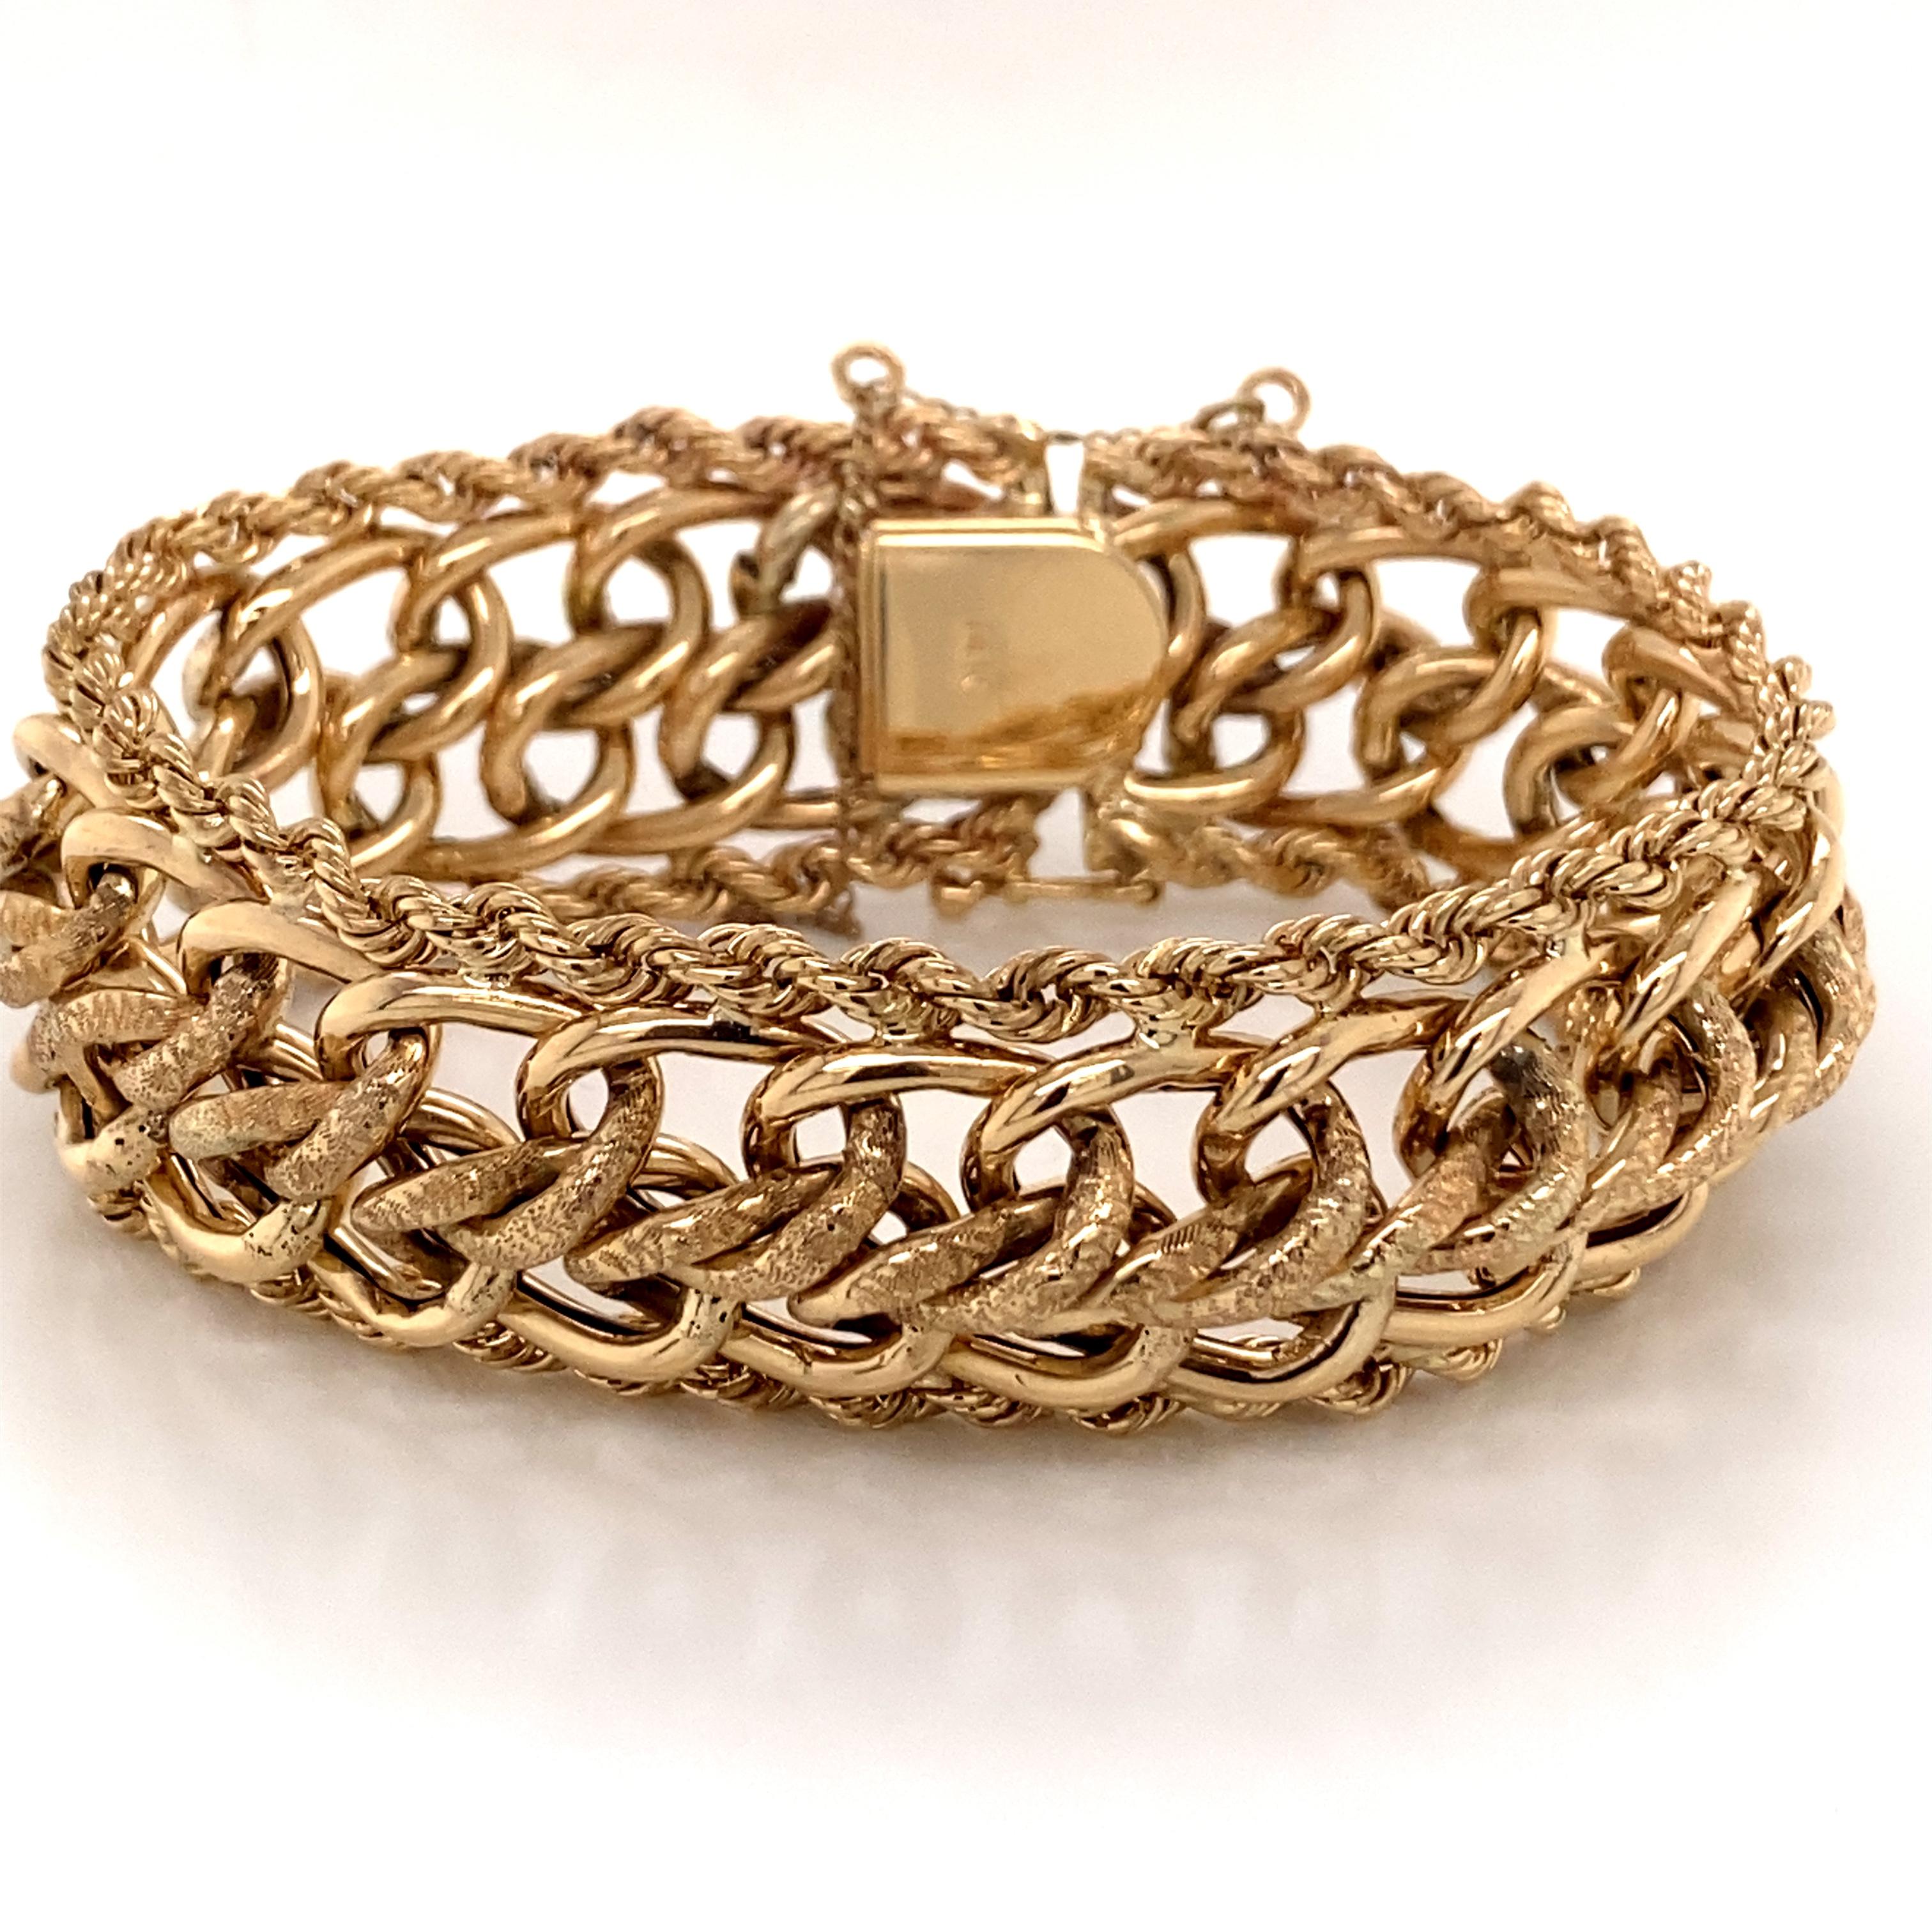 1960s 14 Karat Yellow Gold Wide Charm Link Bracelet with Rope Edge - Le bracelet mesure 7 pouces de long et 7/8 pouces de large et dispose d'un fermoir caché avec un chiffre 8 de sécurité. Il y a 2 anneaux de saut pour attacher une chaîne de